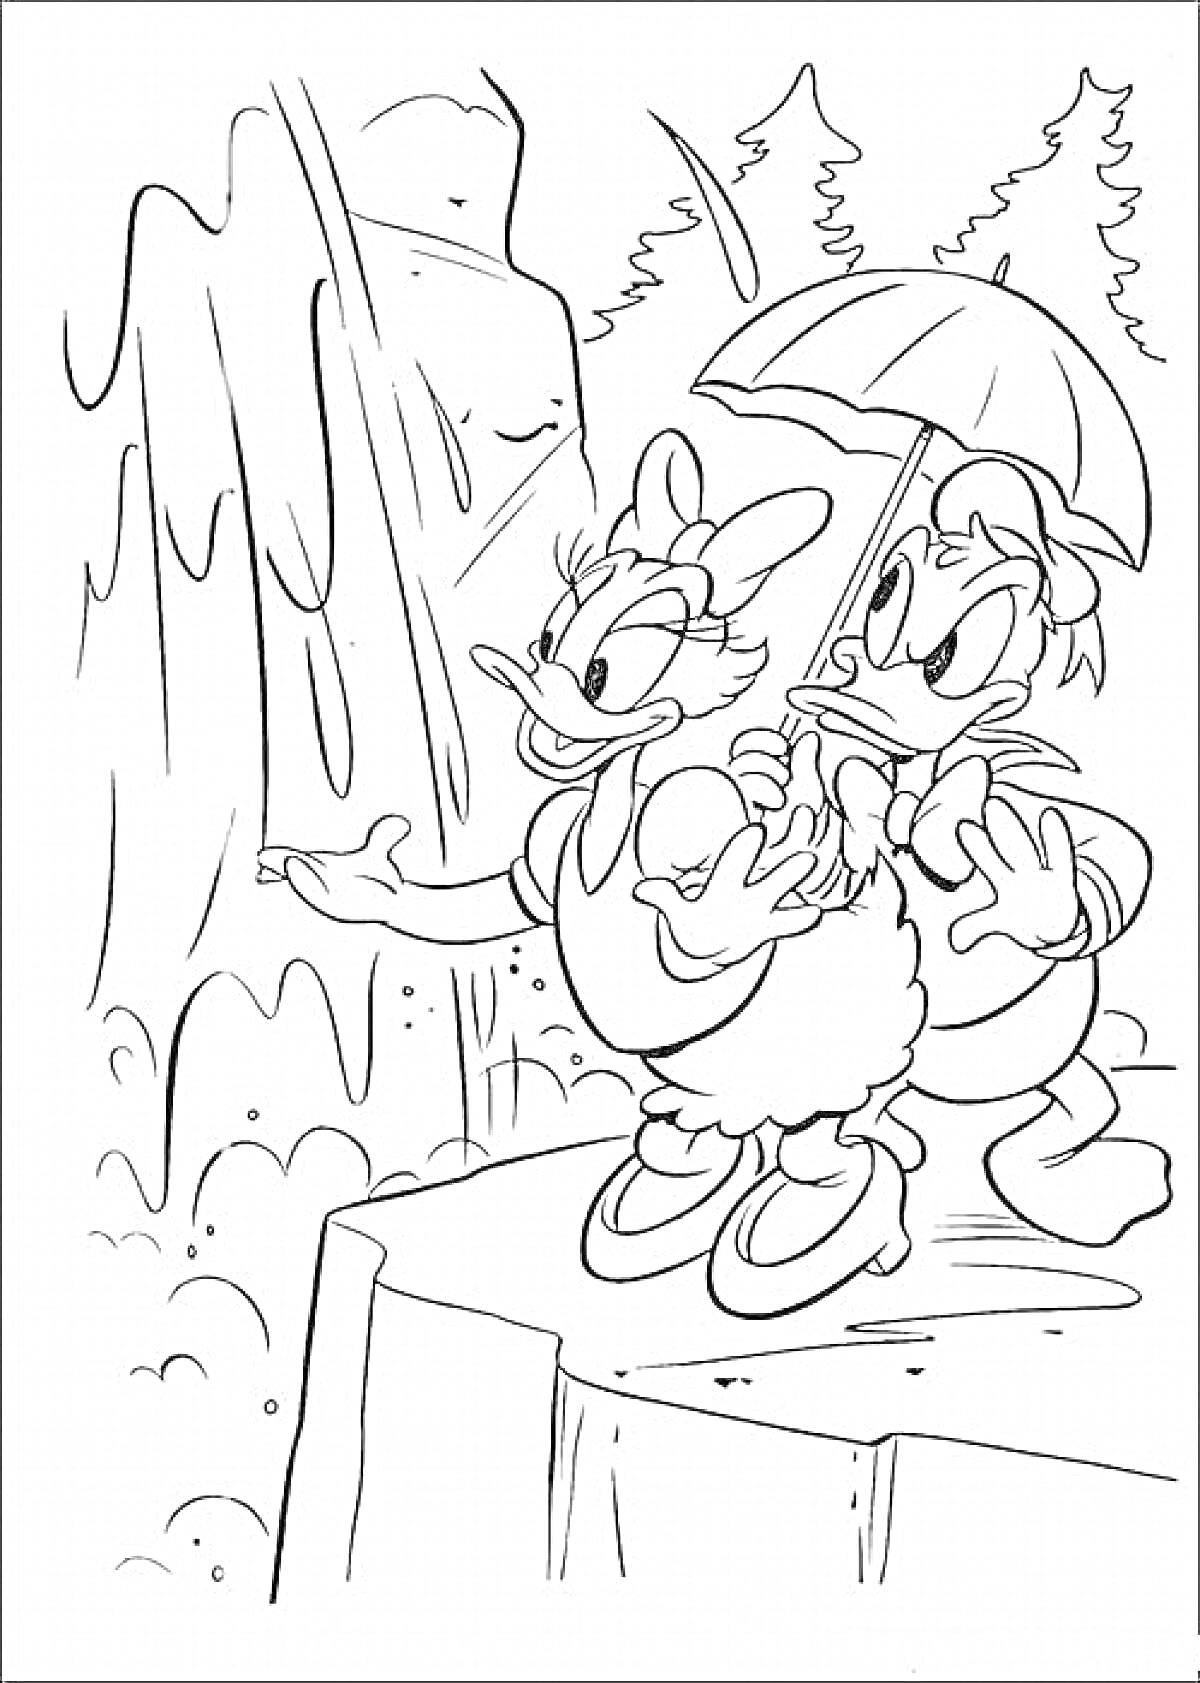 Дейзи Дак и другой персонаж с зонтиком на скале перед водопадом, на фоне леса